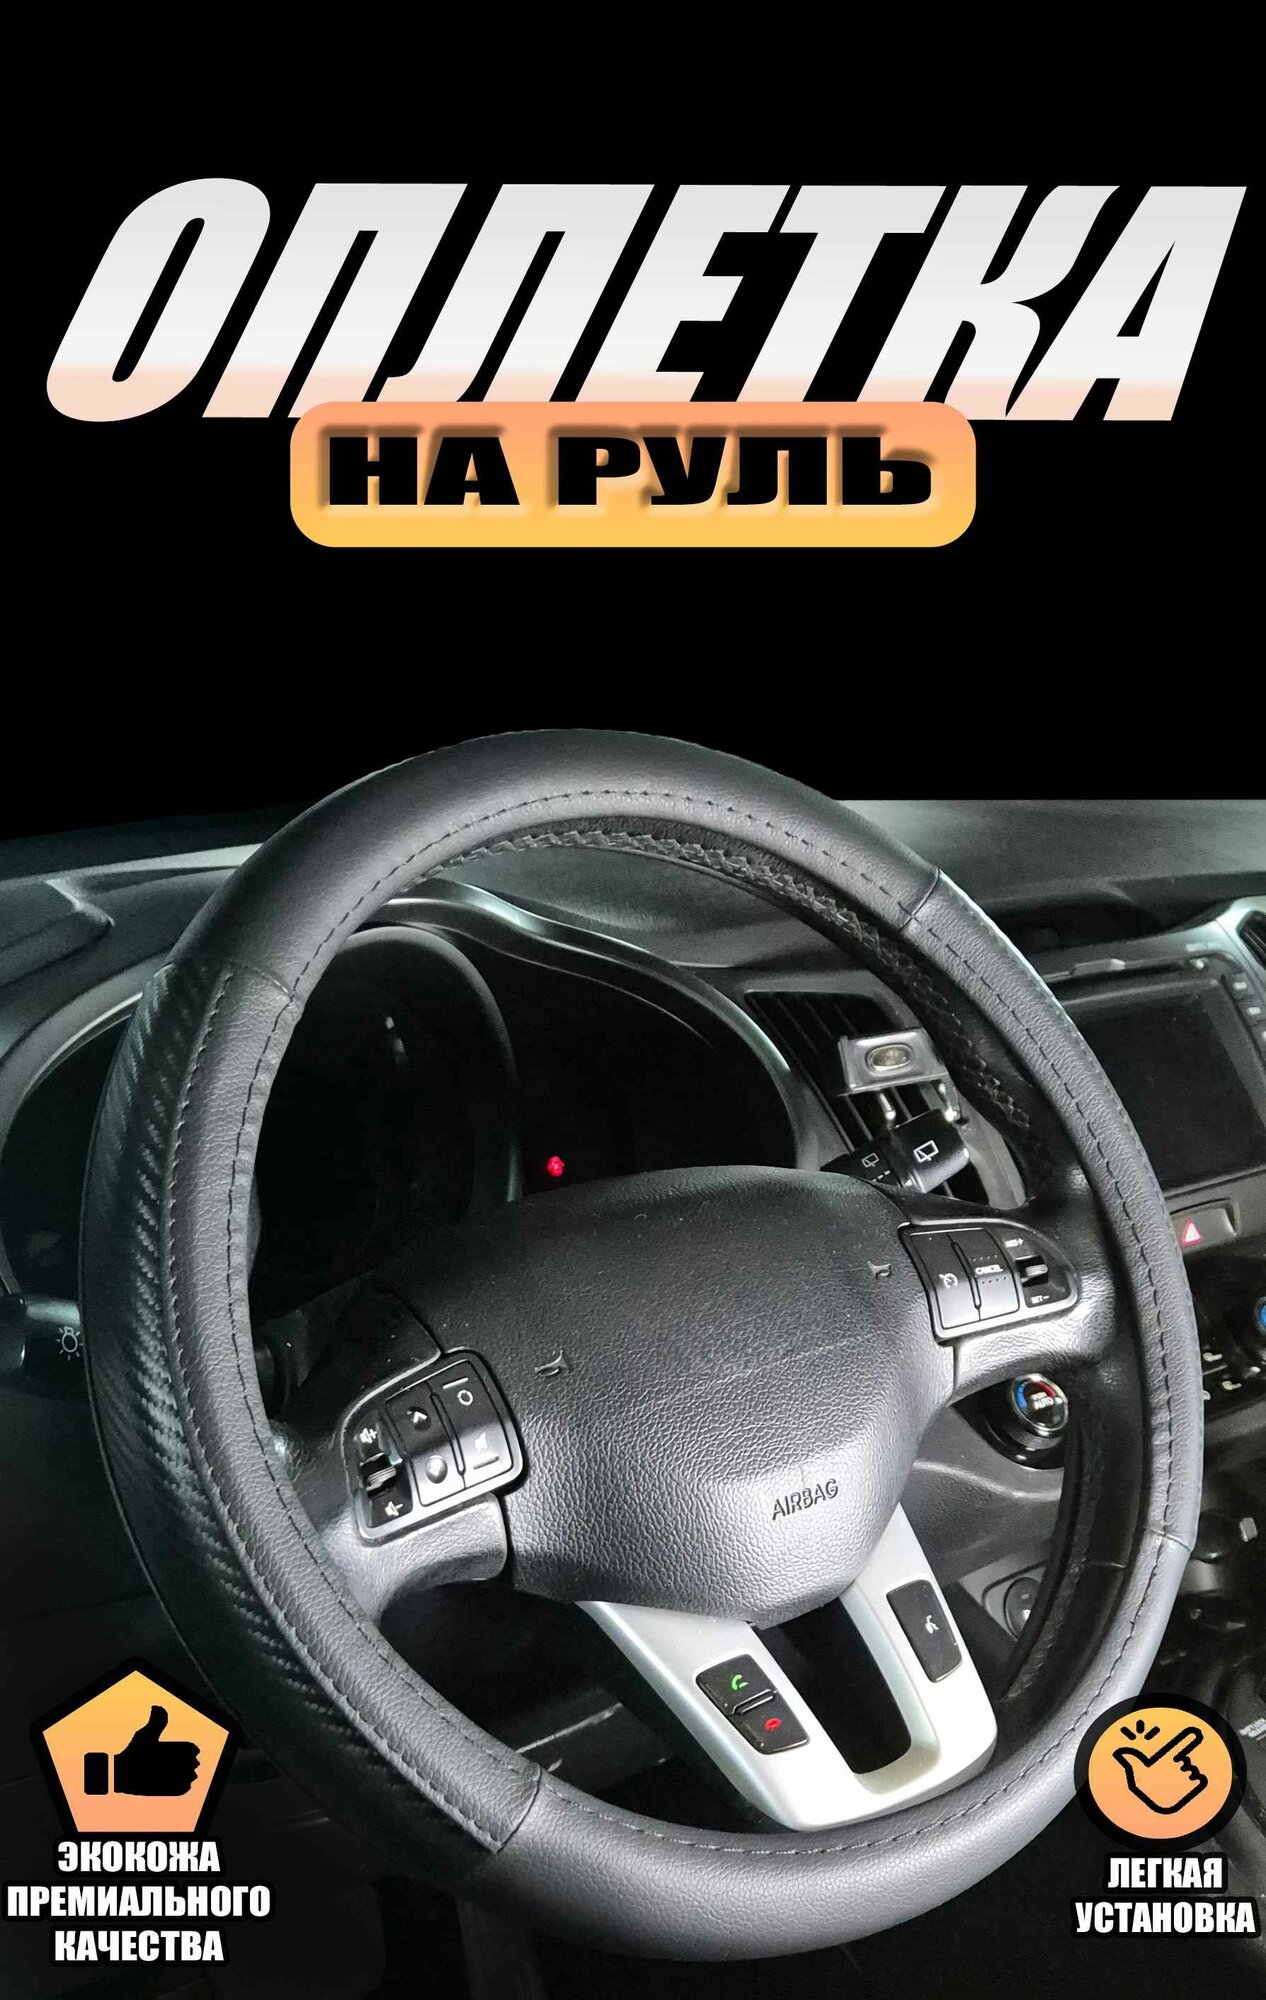 Оплетка (чехол) на руль Хендай Соната (2014 - 2017) седан / Hyundai Sonata экокожа и карбон (премиального качества) Черный